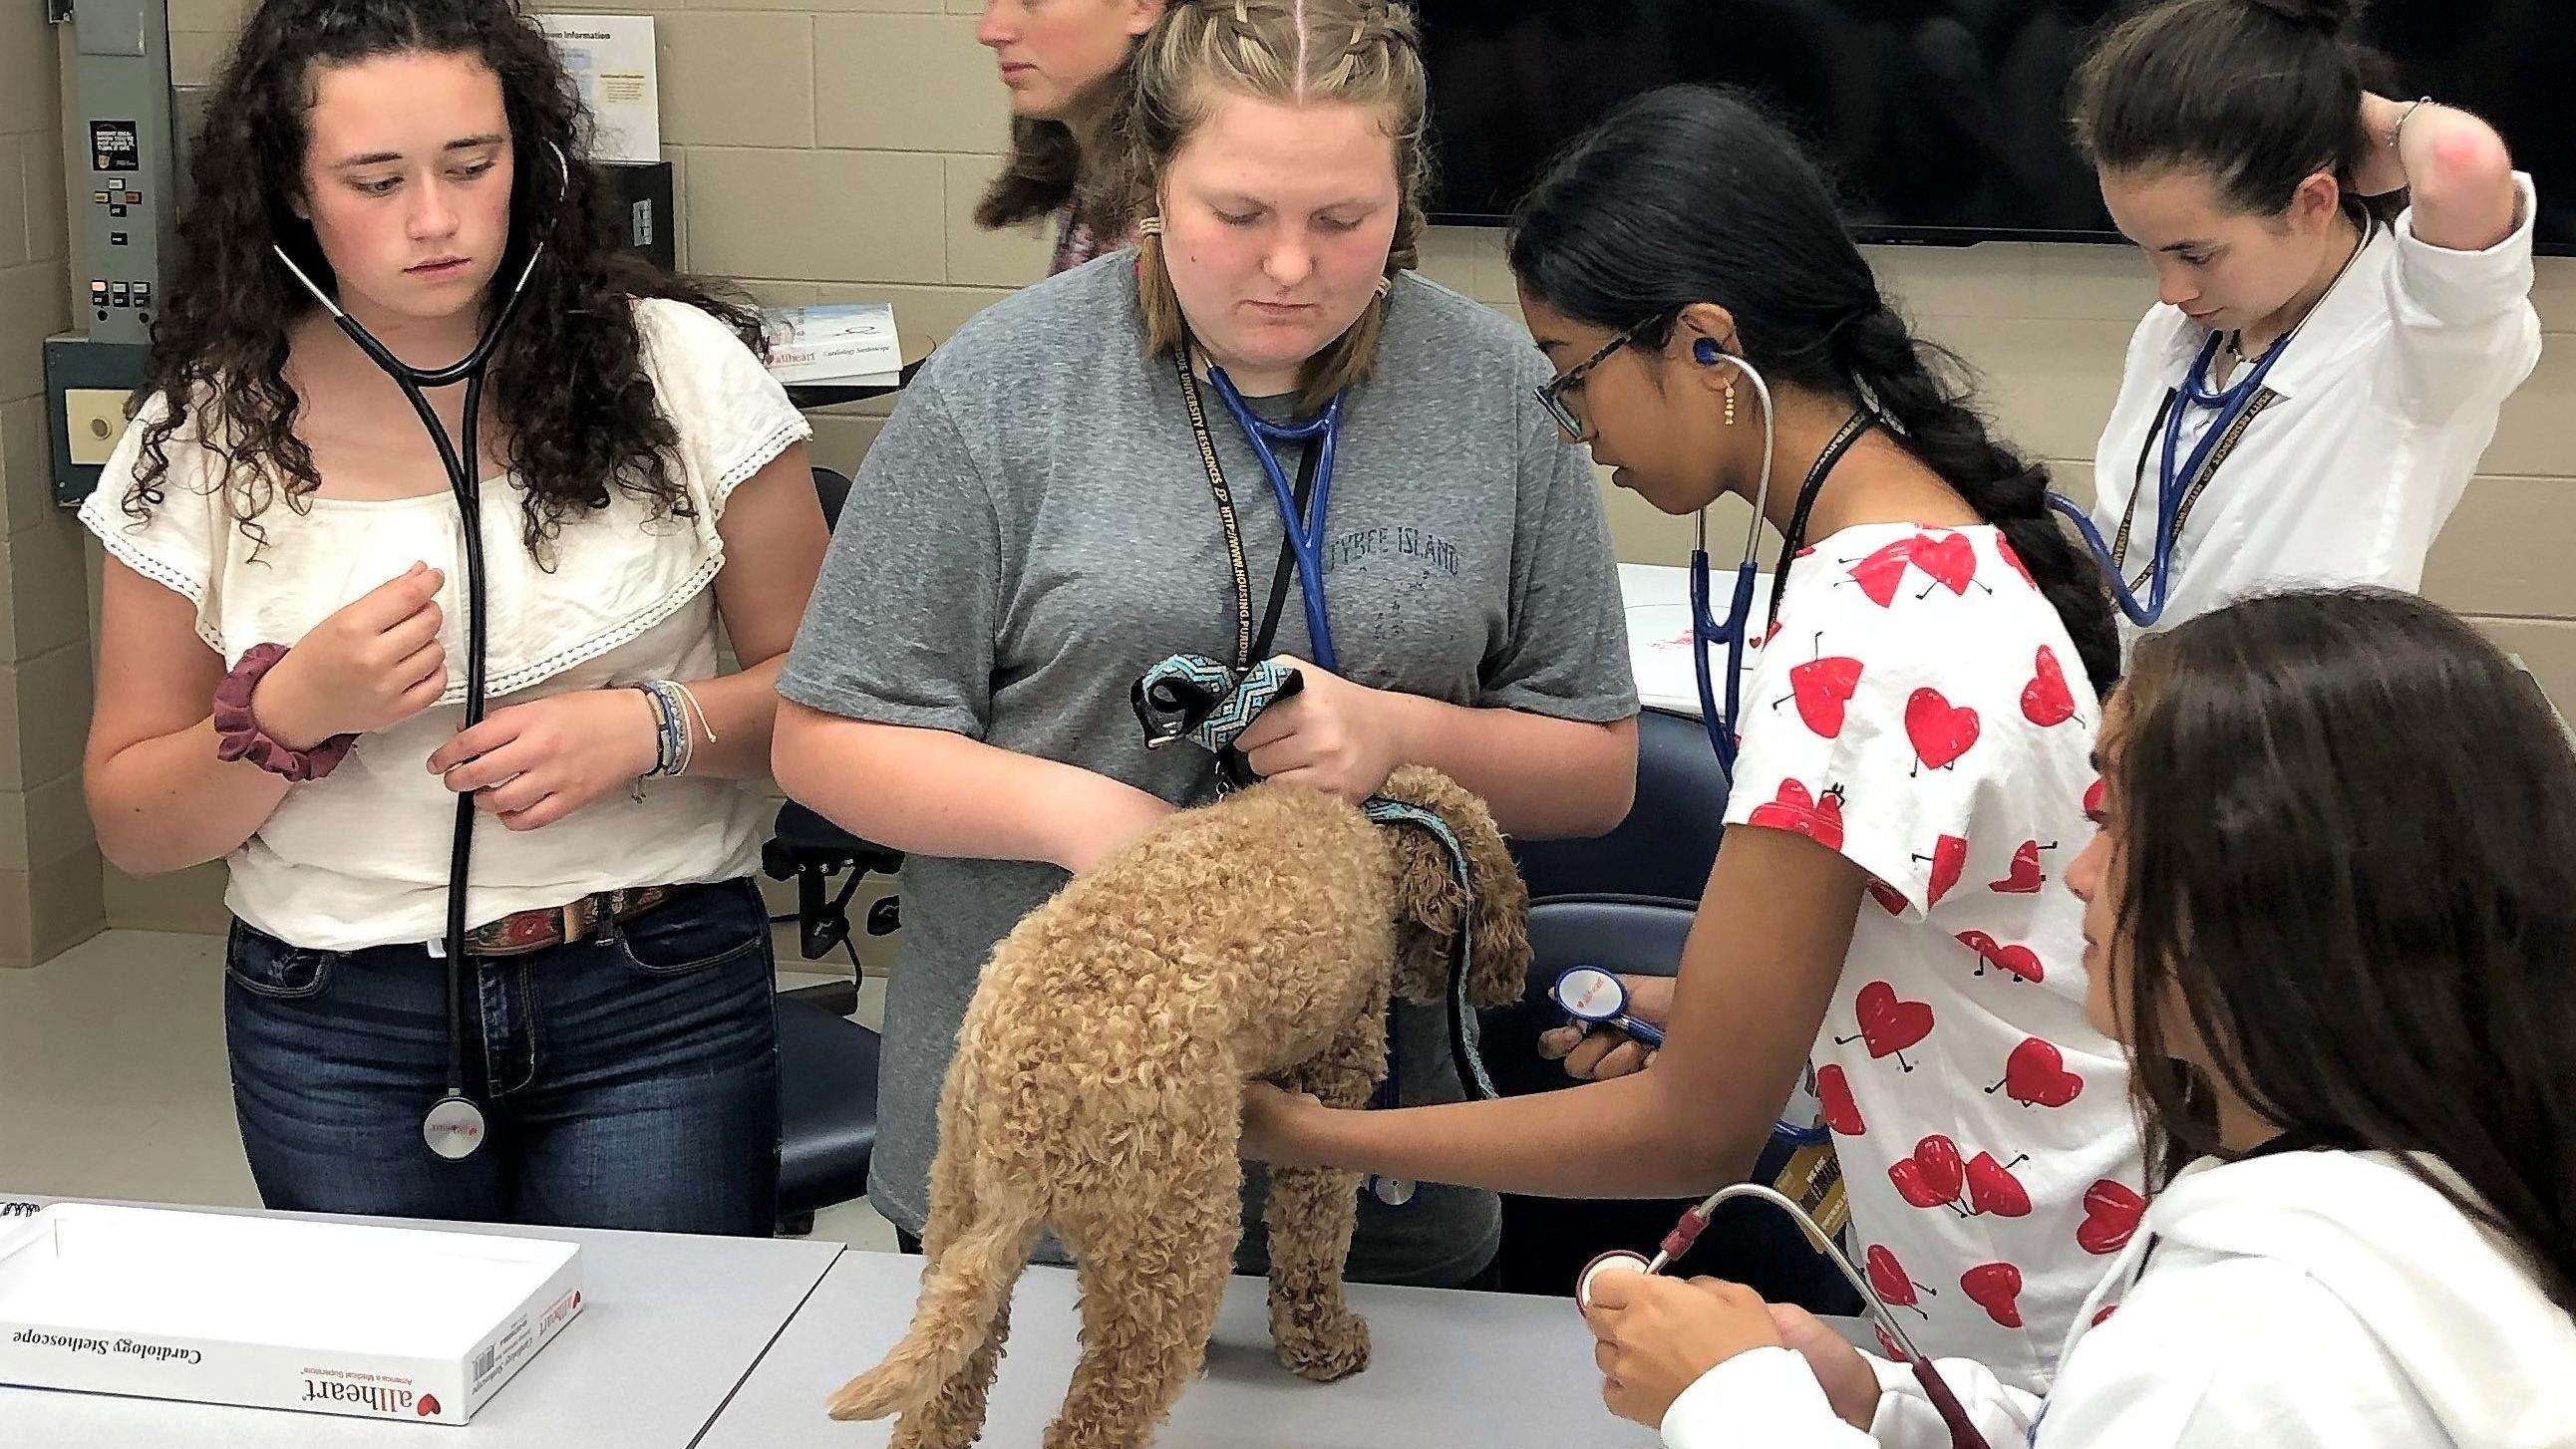 Students examining a dog.